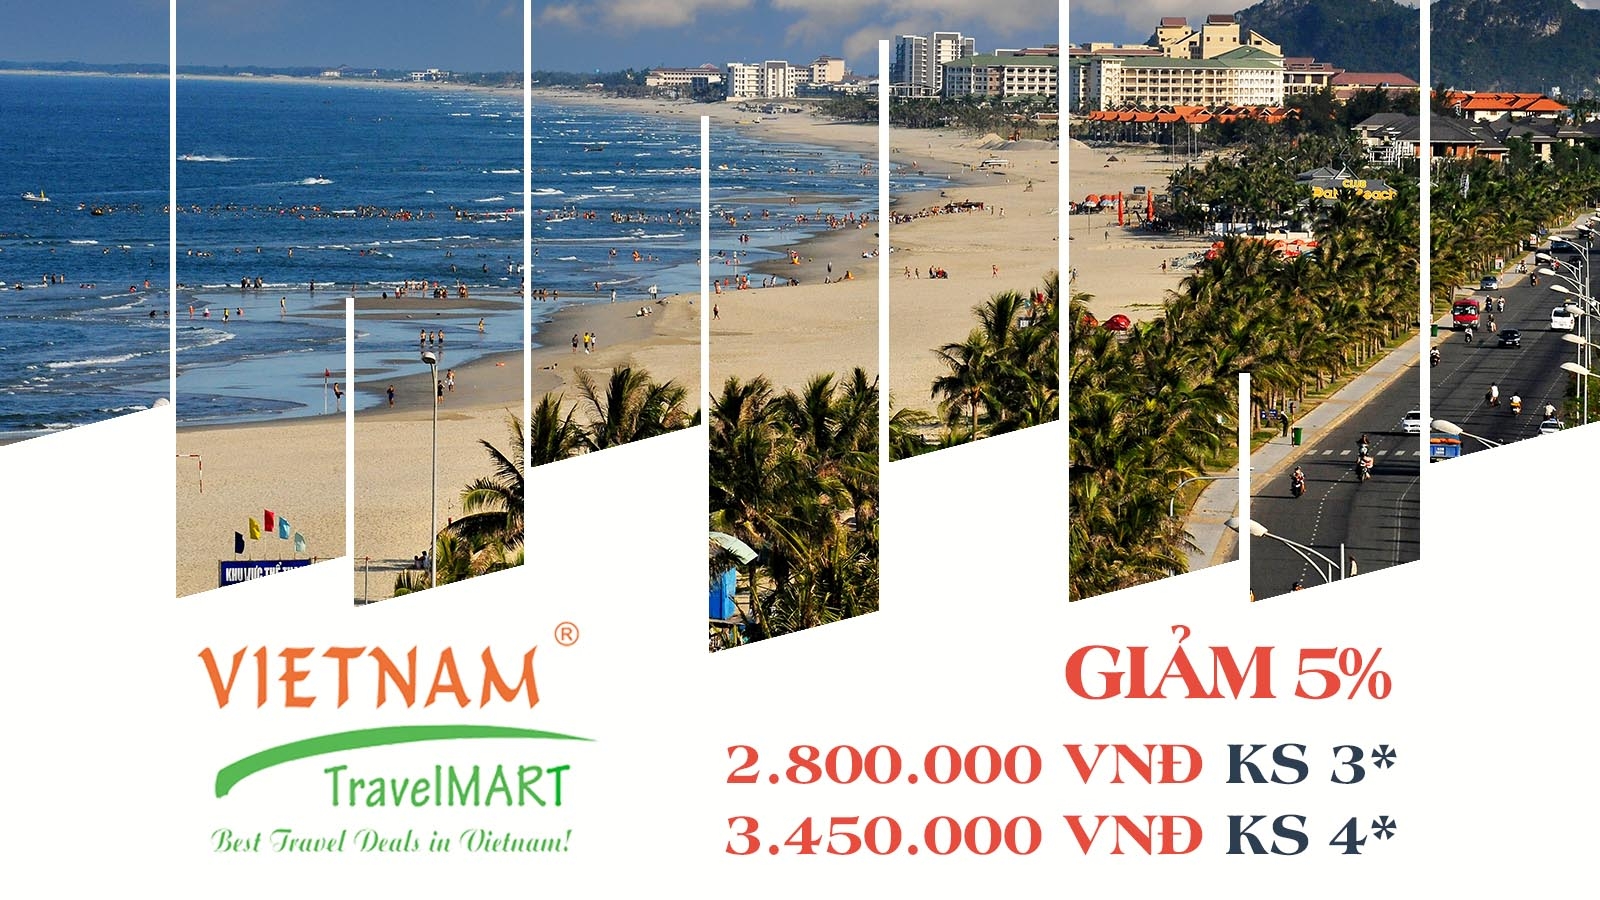 Vietnam TravelMART JSC | Giảm 5% Tour Thiên Đường Miền Trung 4N3Đ 1